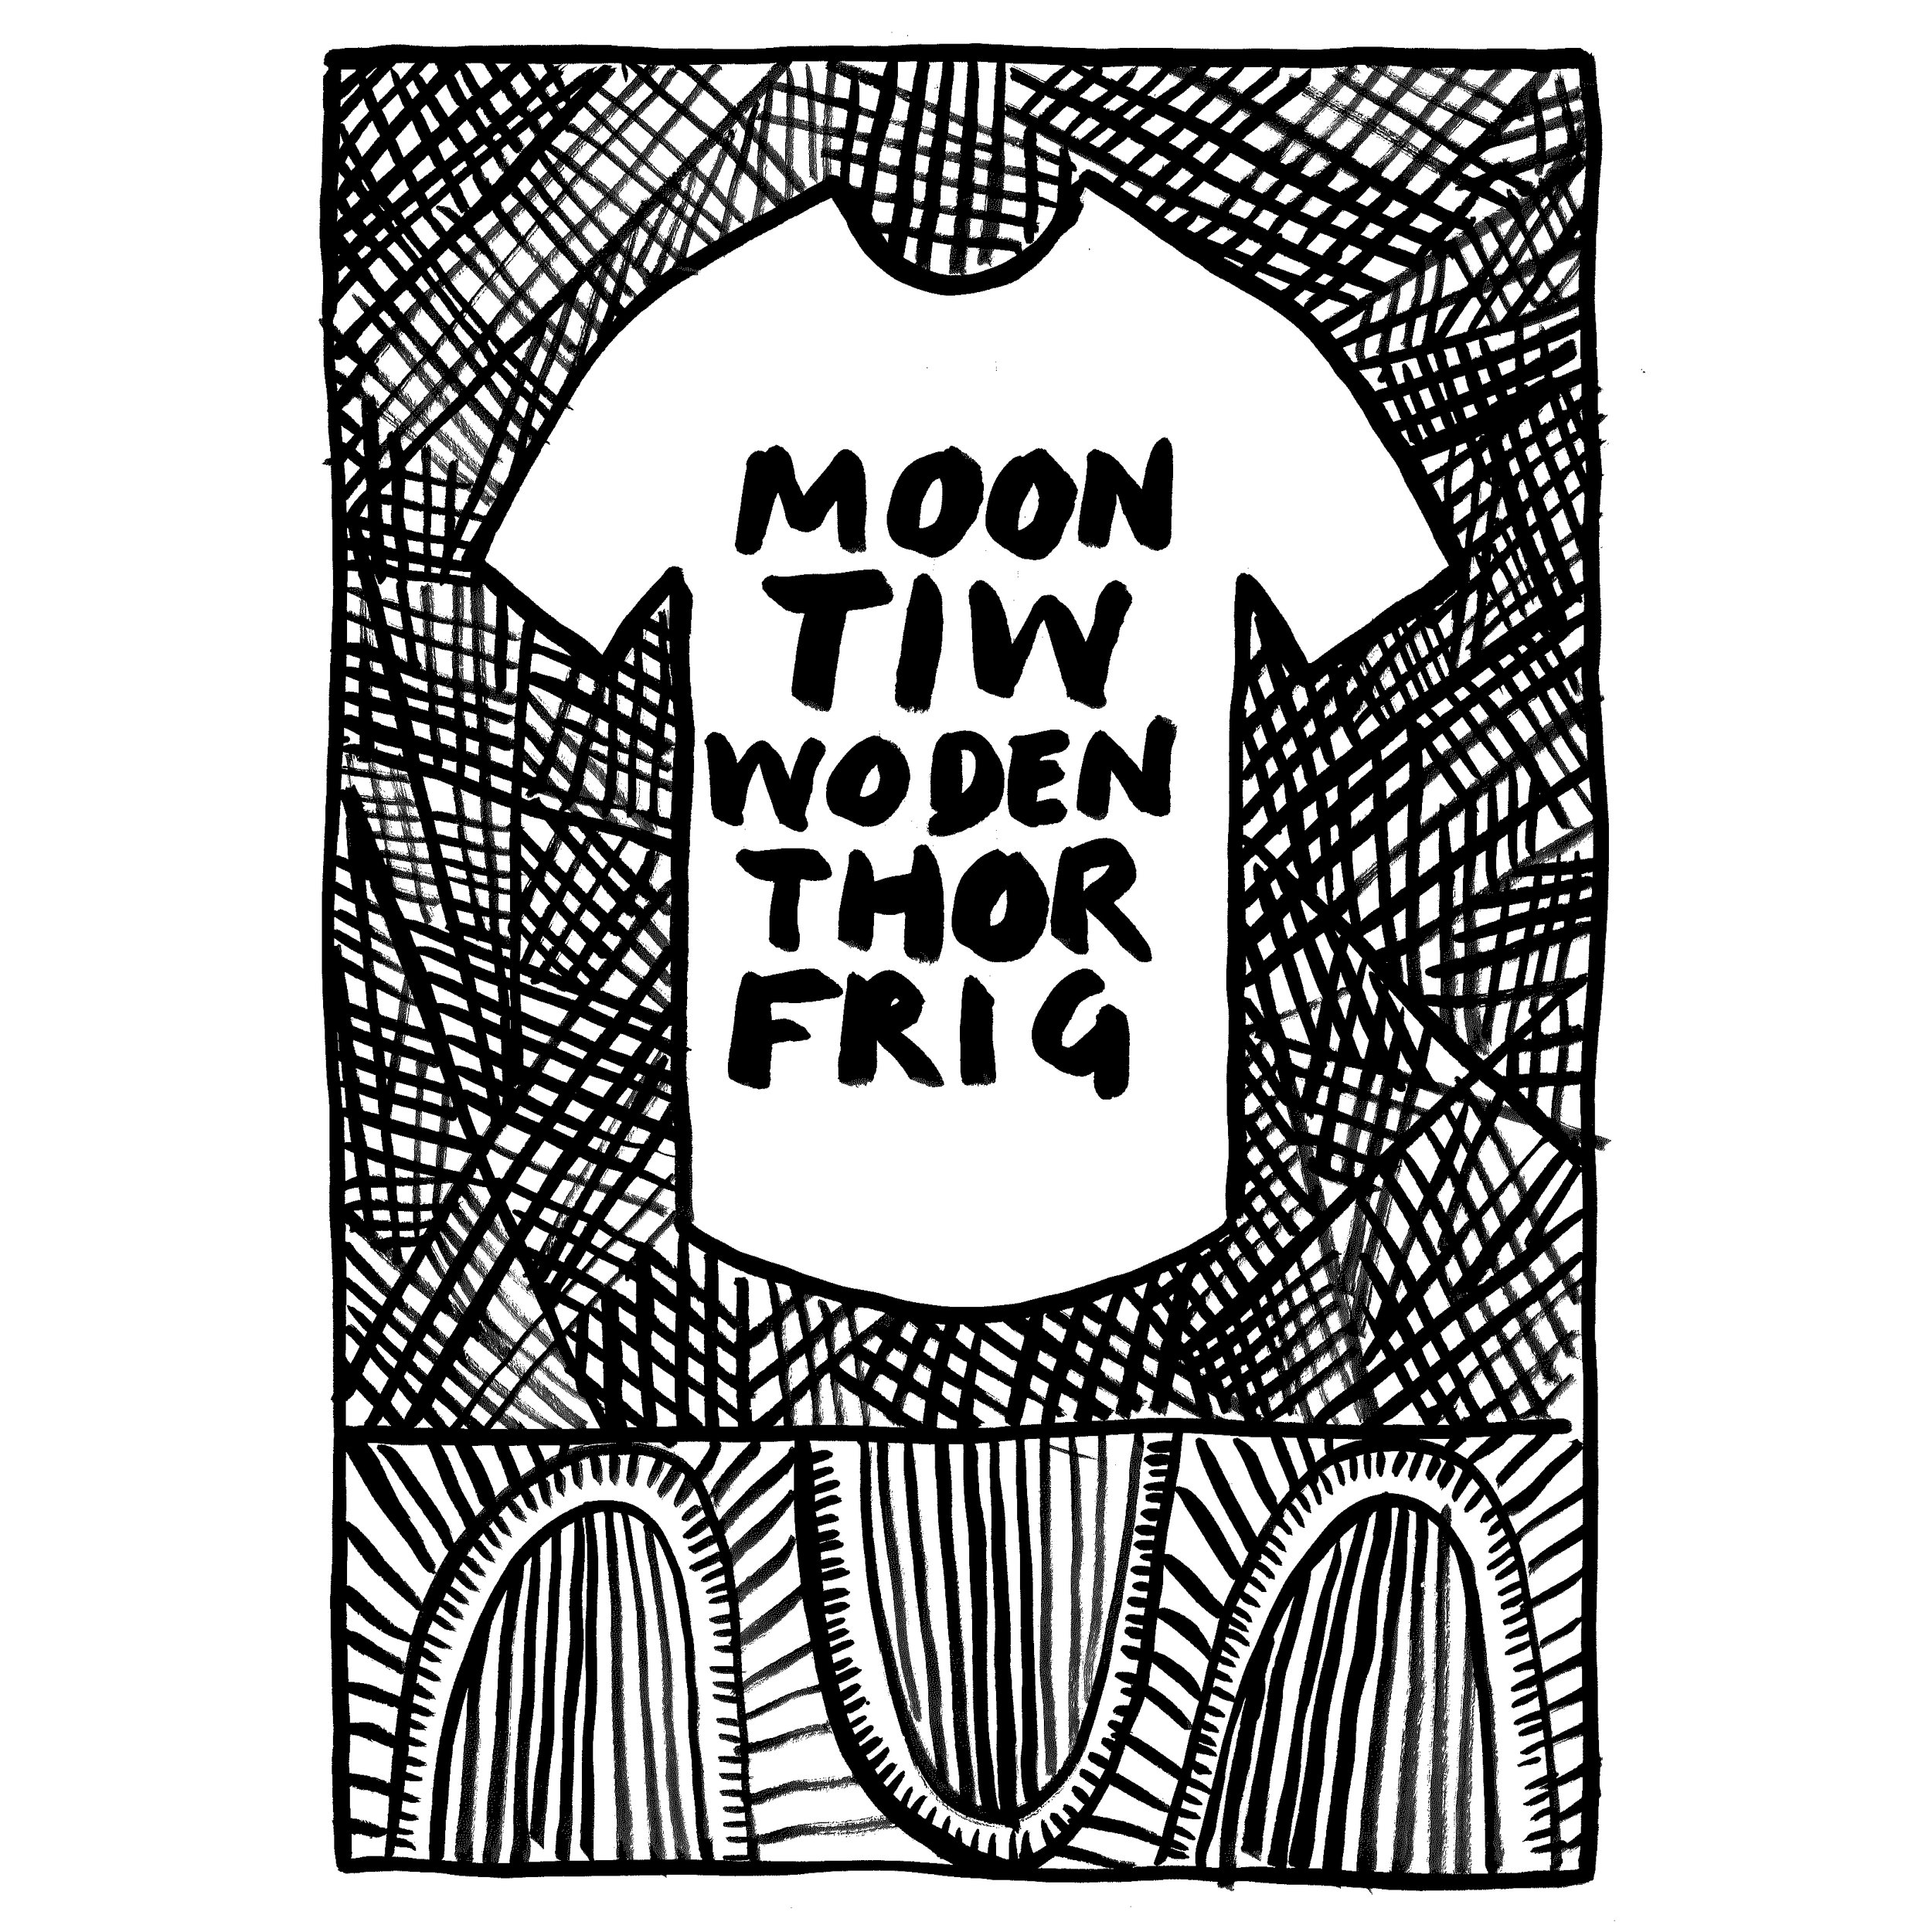 Moon Tiw Woden Thor Frig.jpg